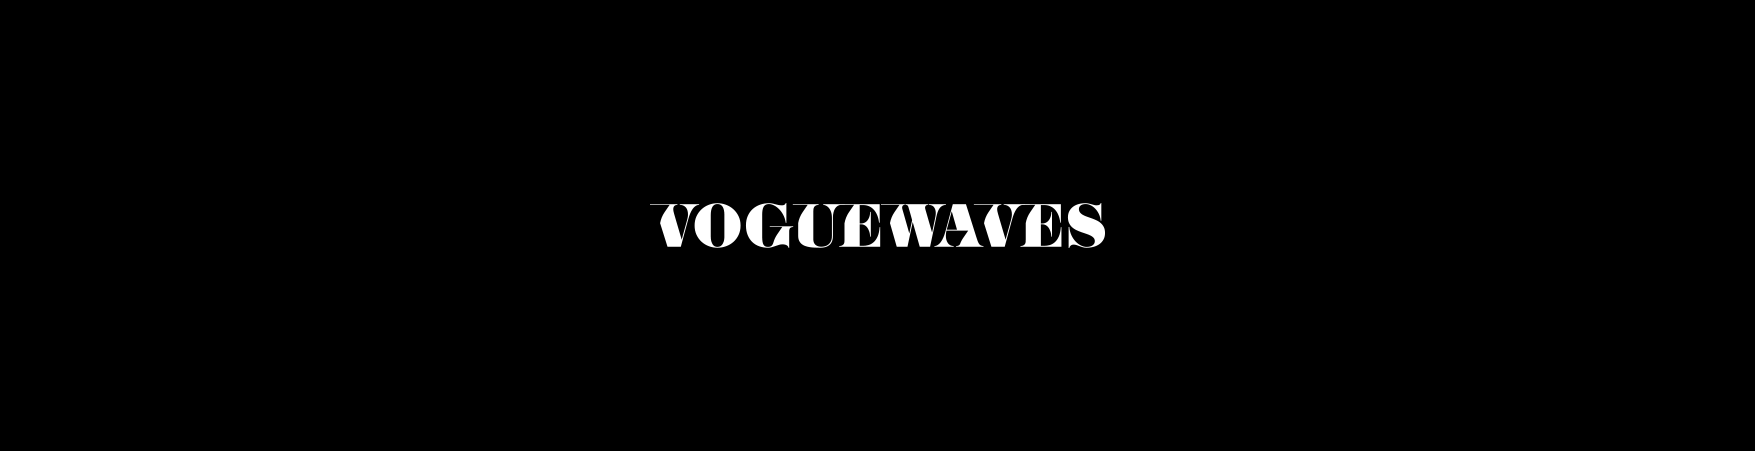 Voguewaves